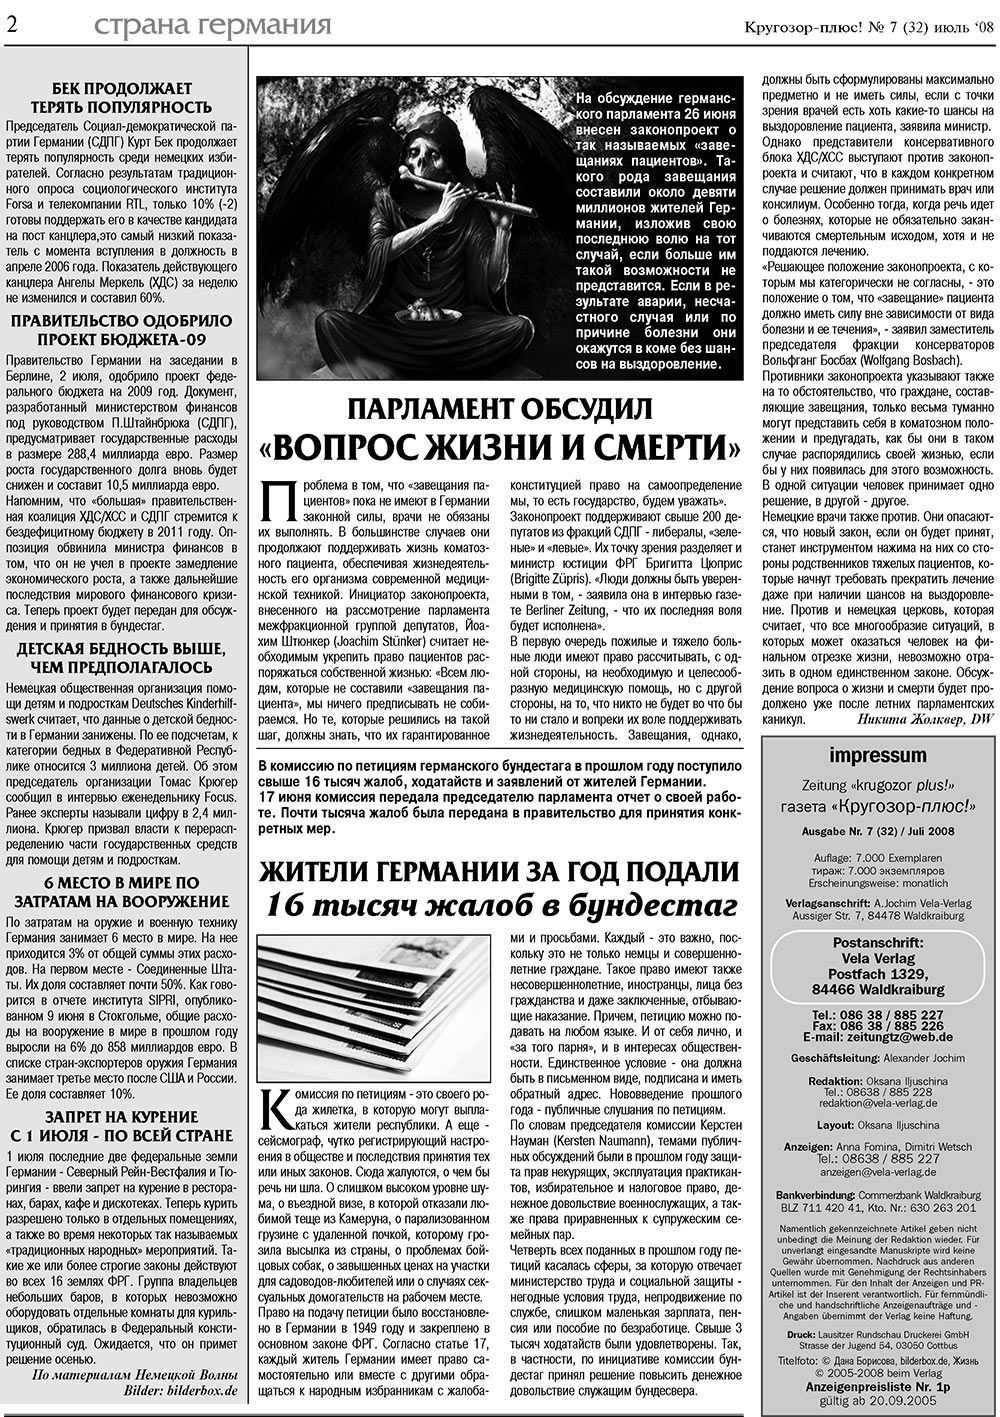 Кругозор плюс!, газета. 2008 №7 стр.2